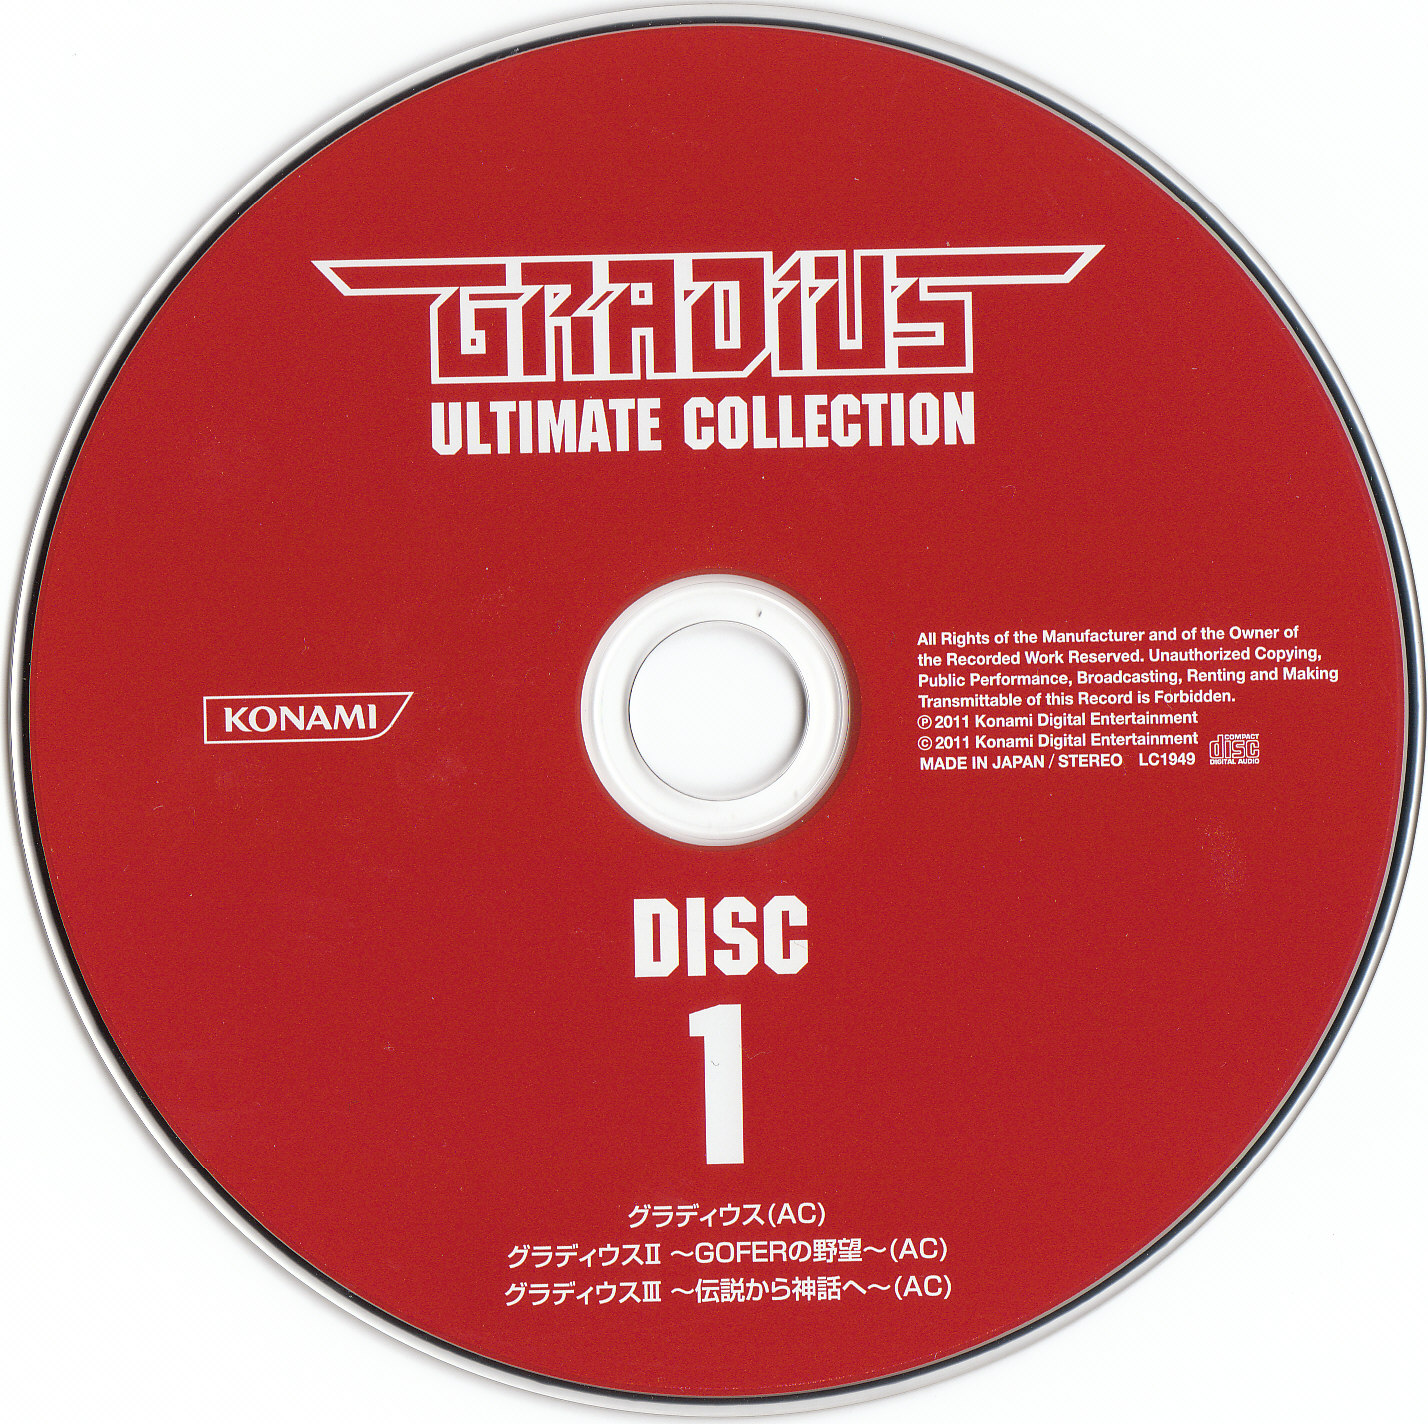 【特価】CD GRADIUS ULTIMATE COLLECTION コナミ 送料無料 ゲーム一般